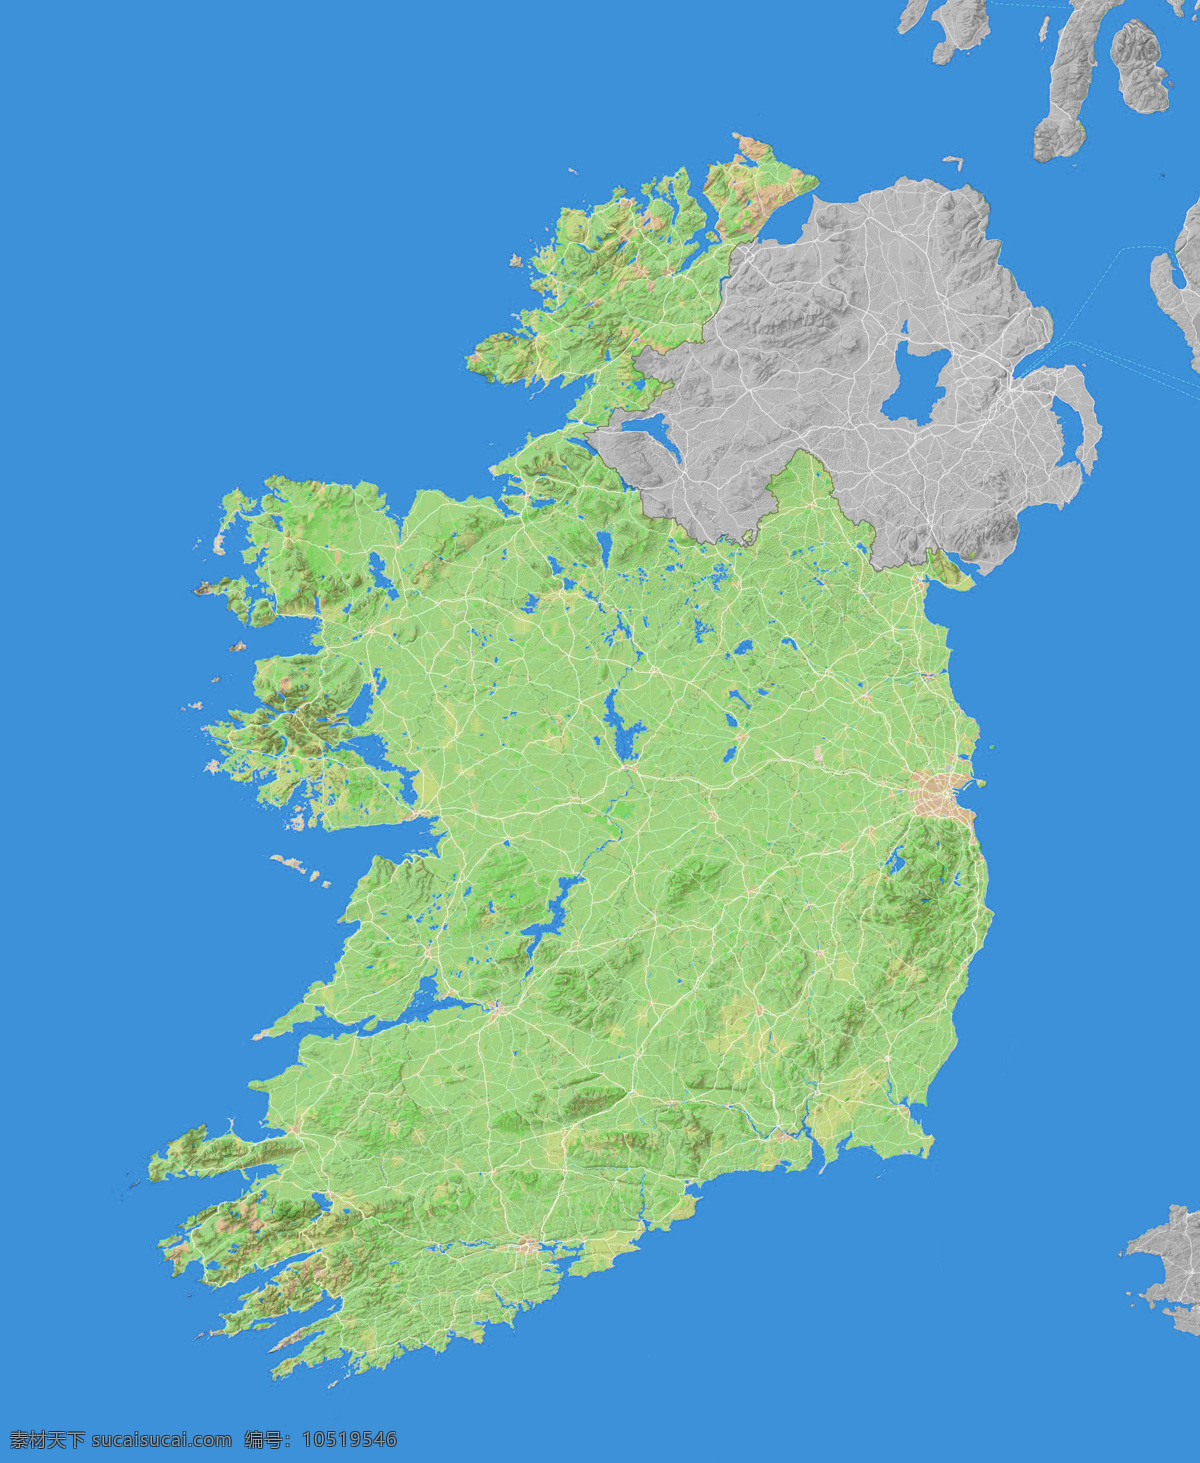 爱尔兰地形图 爱尔兰 地形图 亚洲 欧洲 非洲 美洲 澳洲 南极洲 上帝之眼 卫星图 俯视图 nasa 地中海 海洋 山地 西西里岛 撒丁岛 阿尔卑斯山 南欧 东欧 地球 自然景观 自然风景